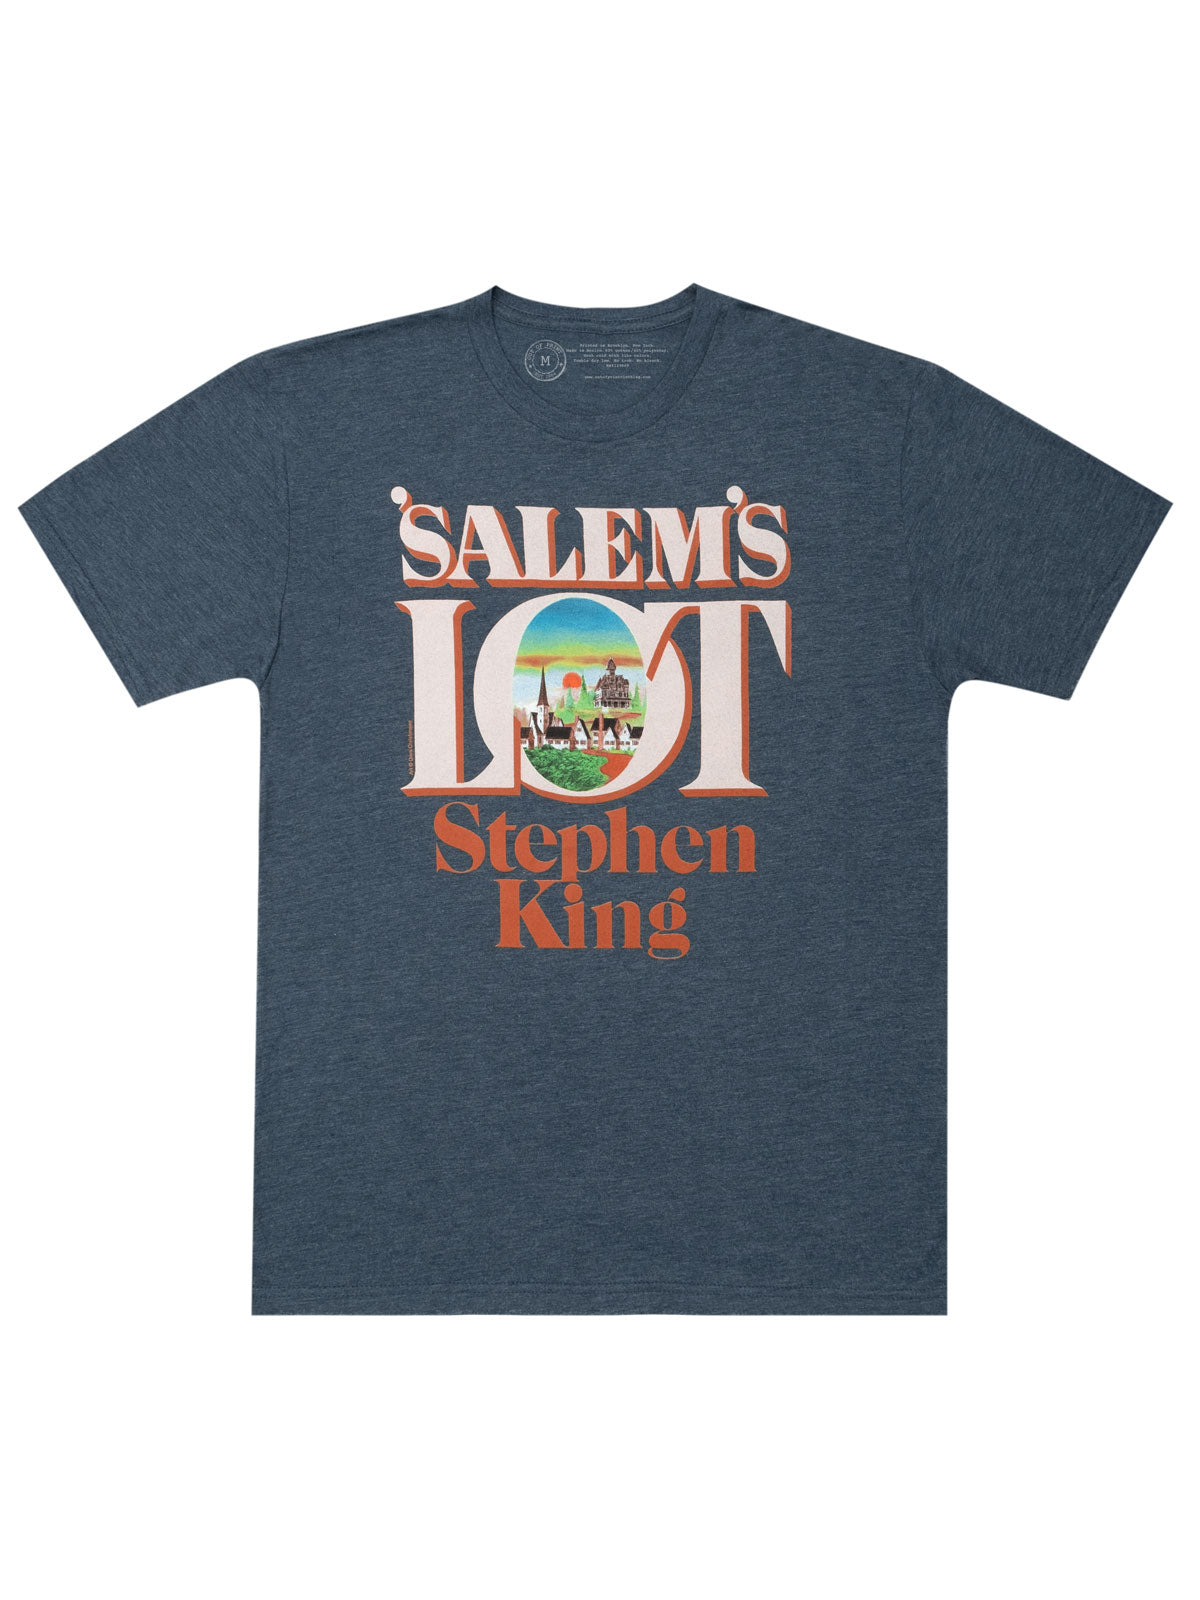 'Salem's Lot by Stephen King